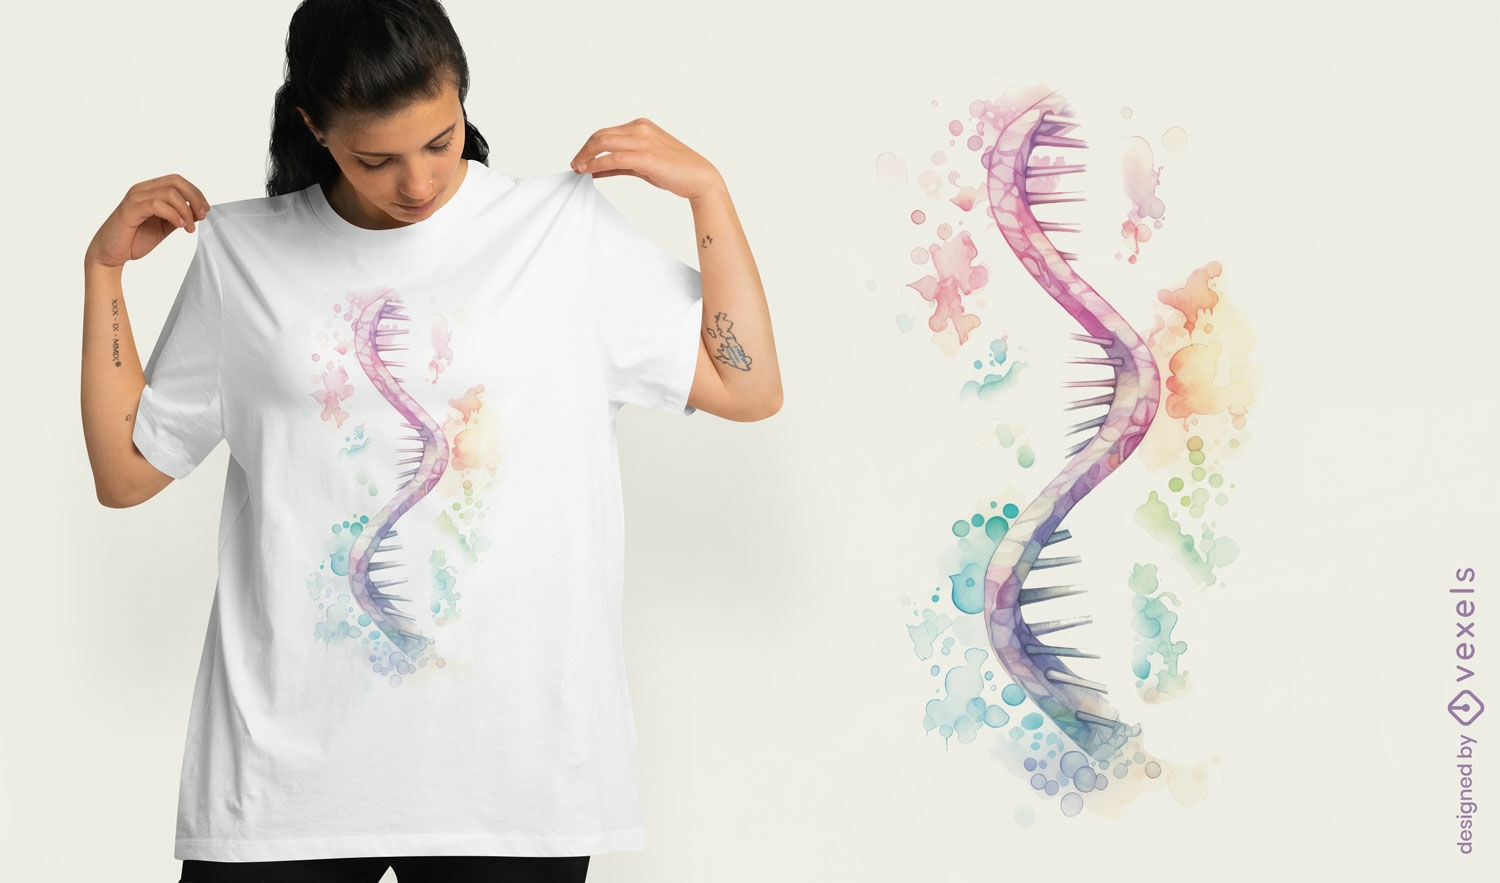 Dise?o de camiseta de ARN en acuarela.